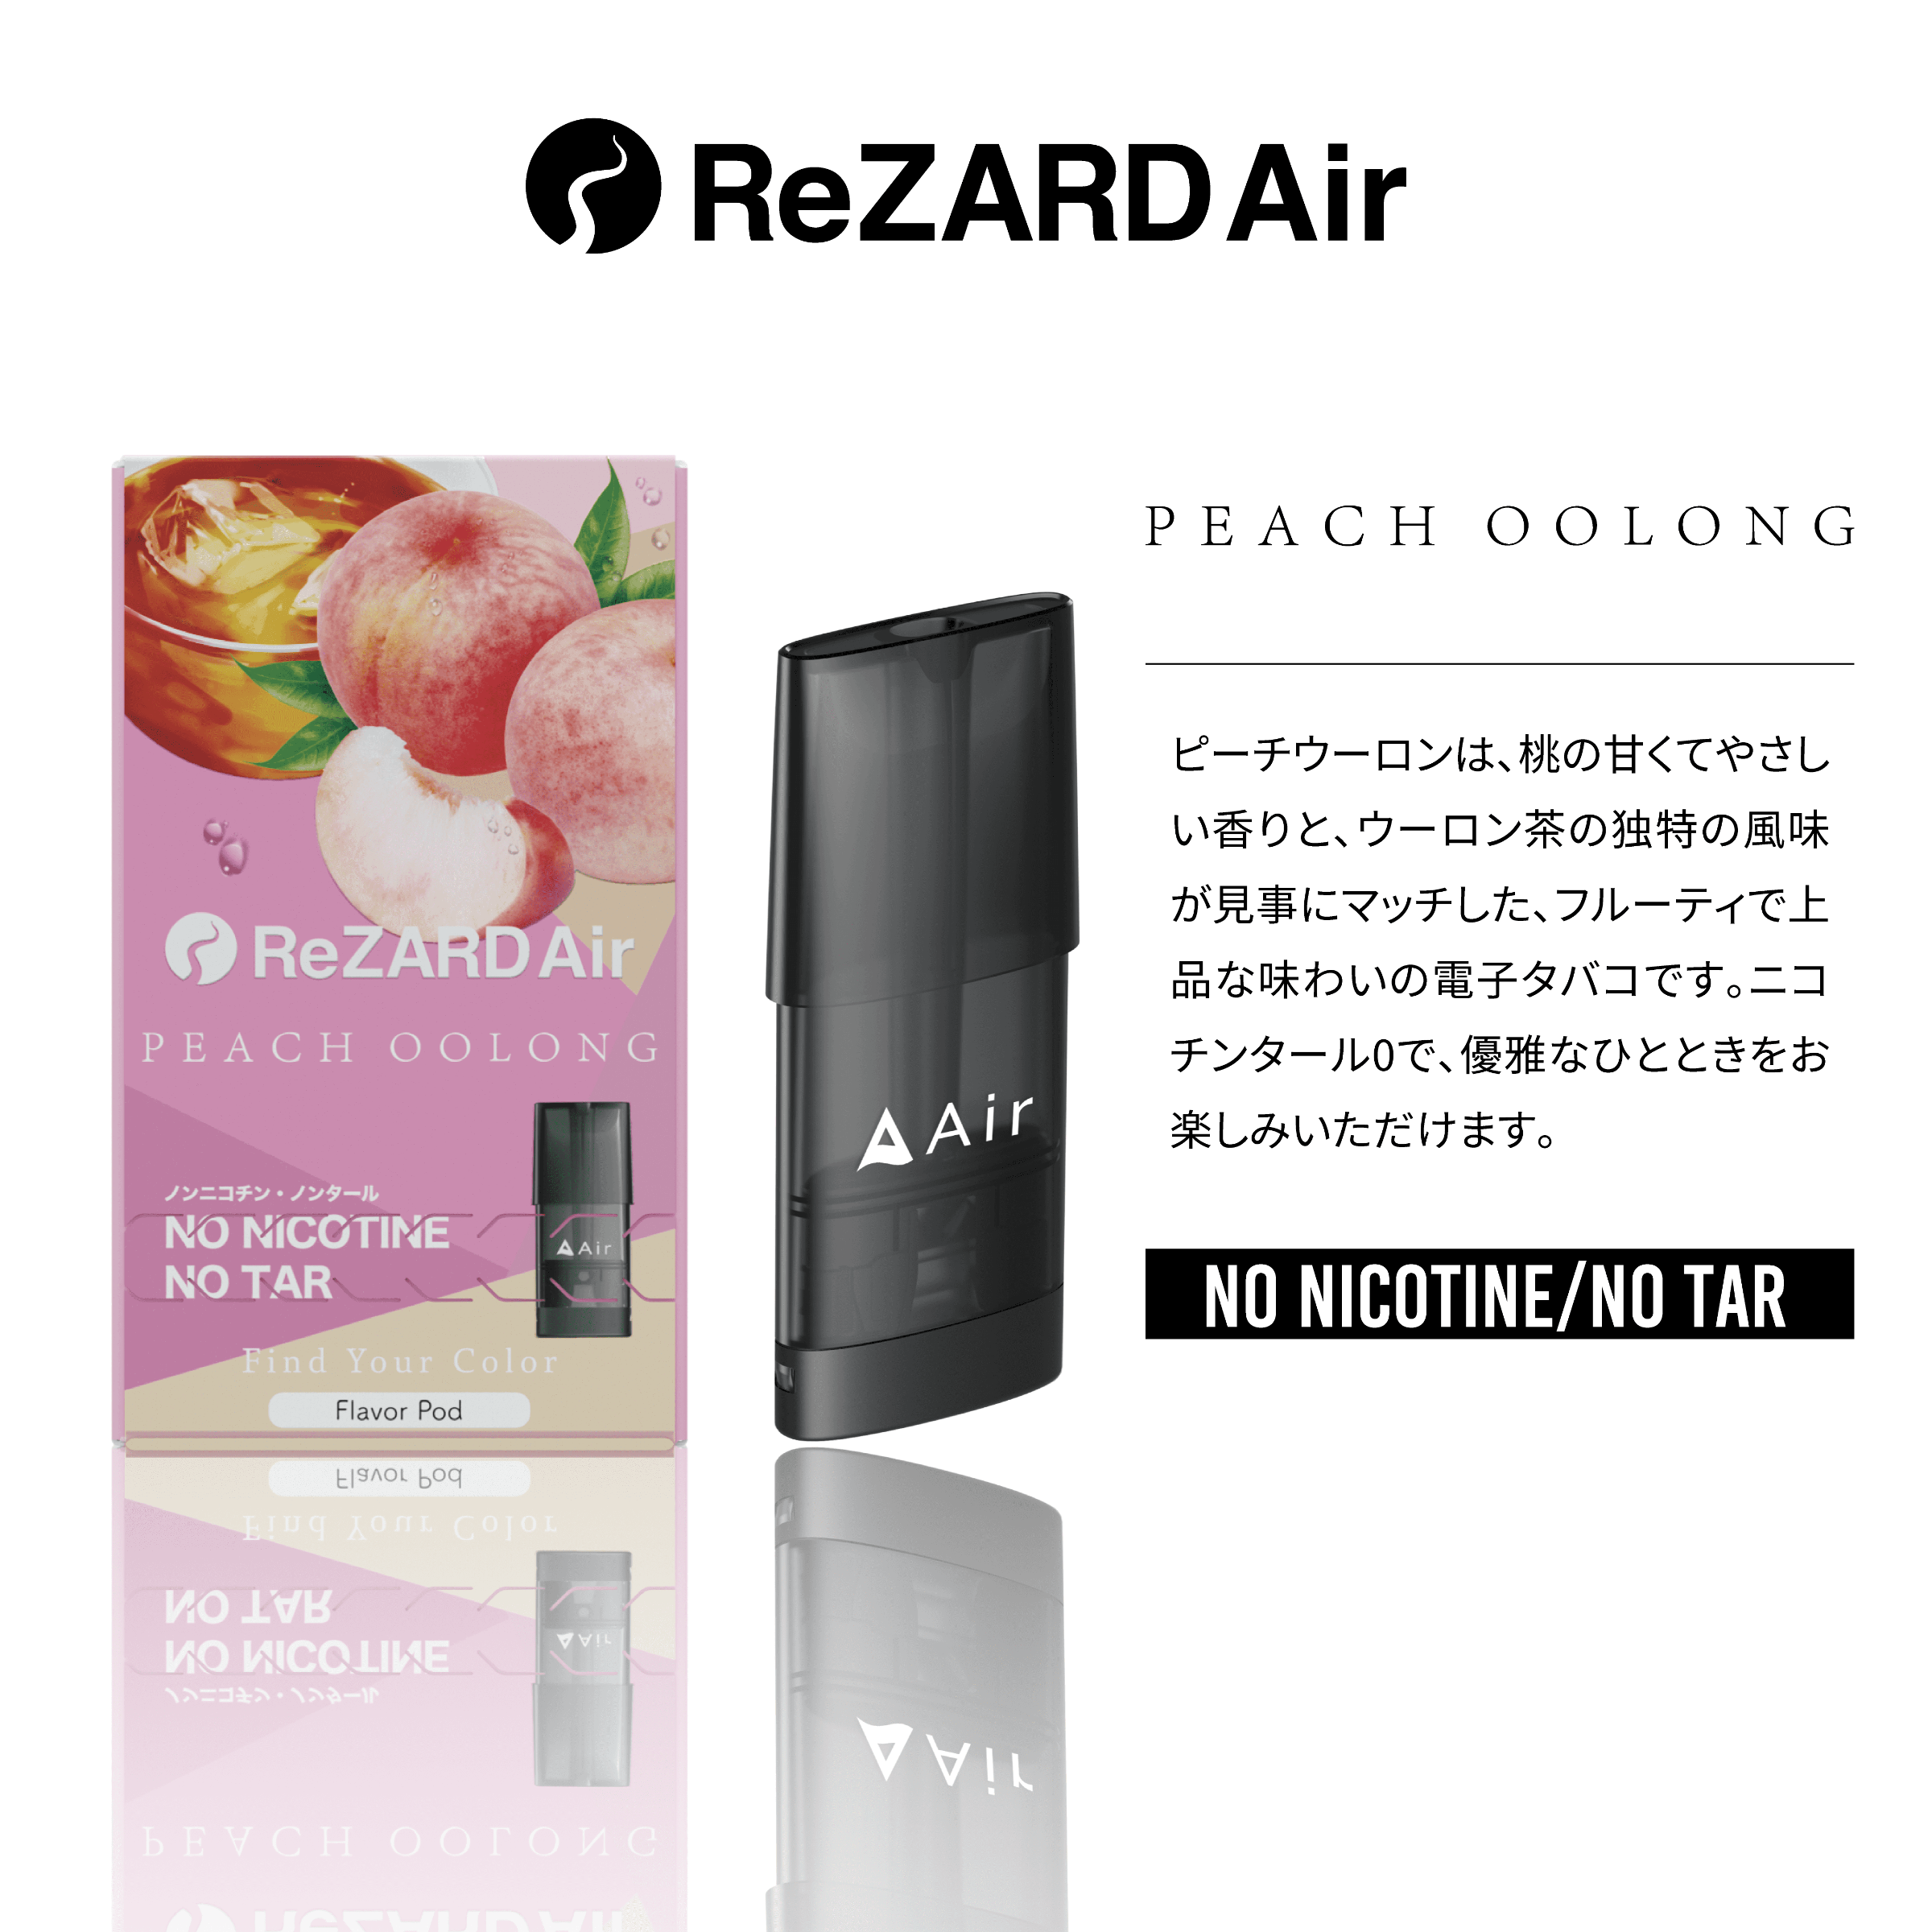 ReZARD Air】Starter Kit - タバコグッズ